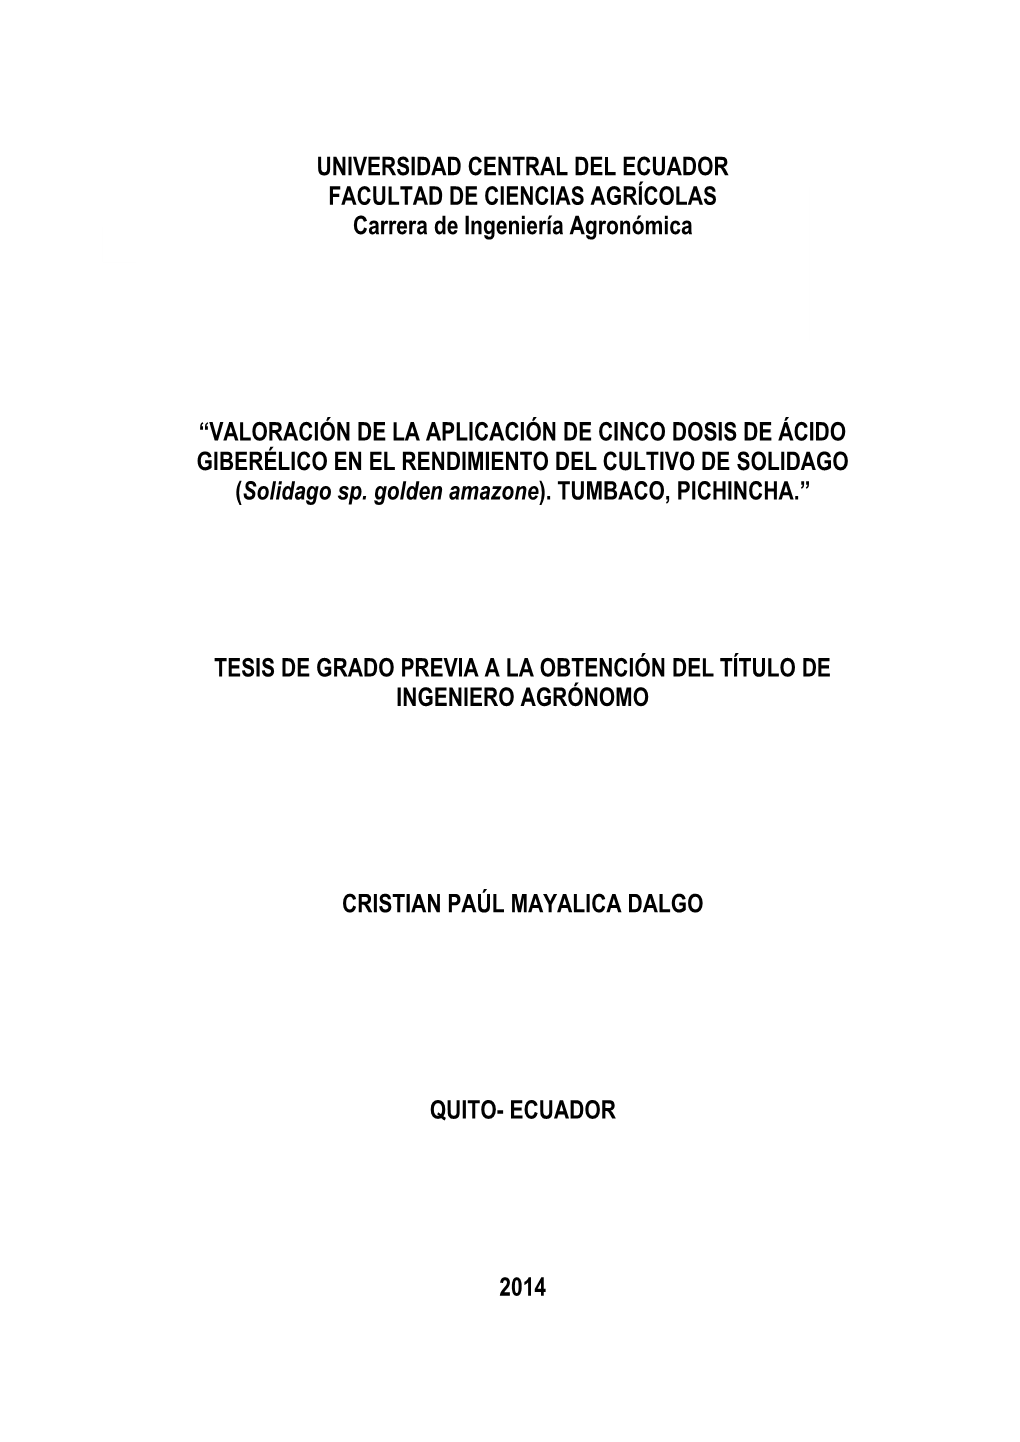 UNIVERSIDAD CENTRAL DEL ECUADOR FACULTAD DE CIENCIAS AGRÍCOLAS Carrera De Ingeniería Agronómica